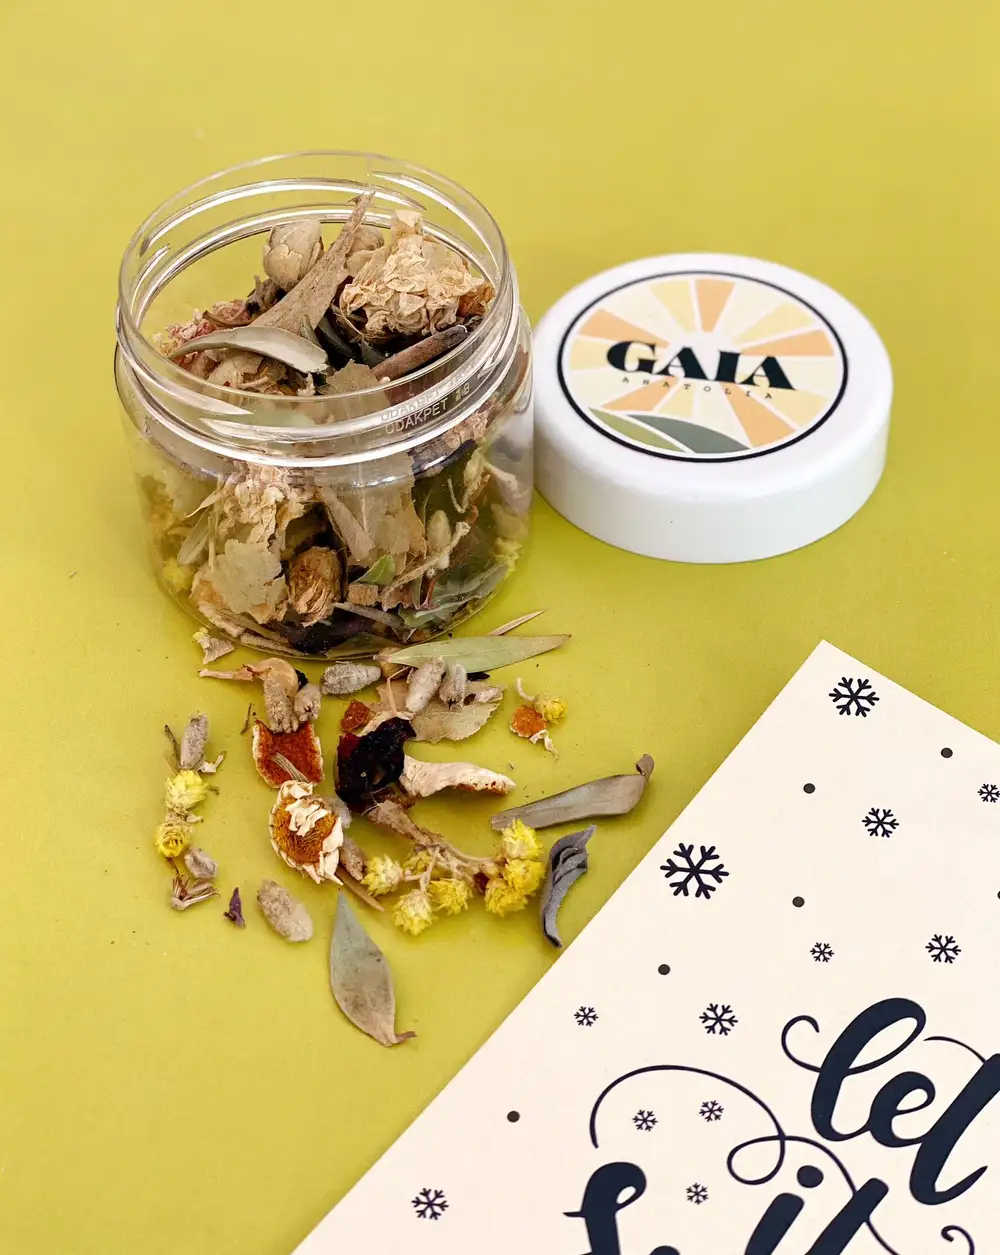 Gaia İyileştiren Bitkiler Kış Çayı